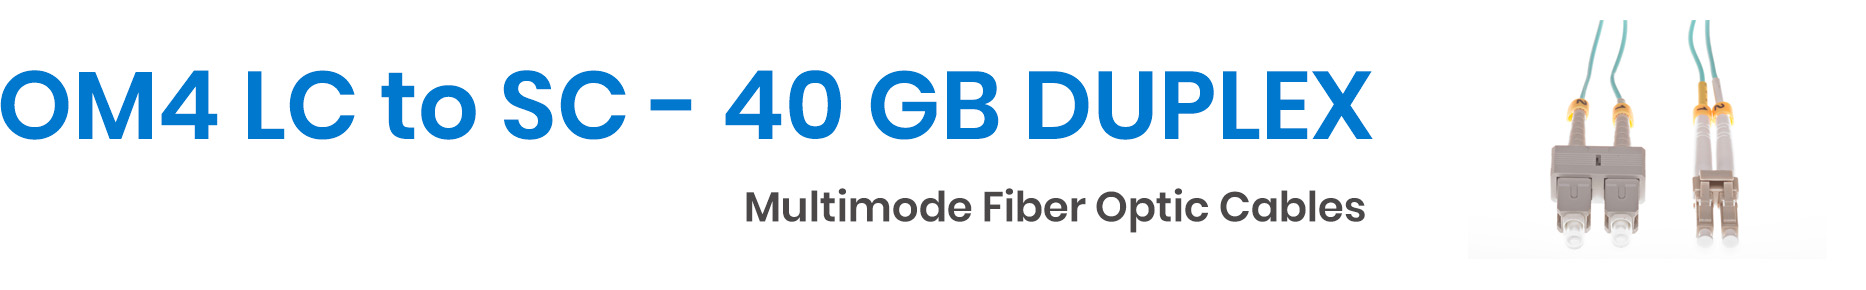 LC to SC 40GB OM4 Fiber Optic Cable - Multimode Duplex